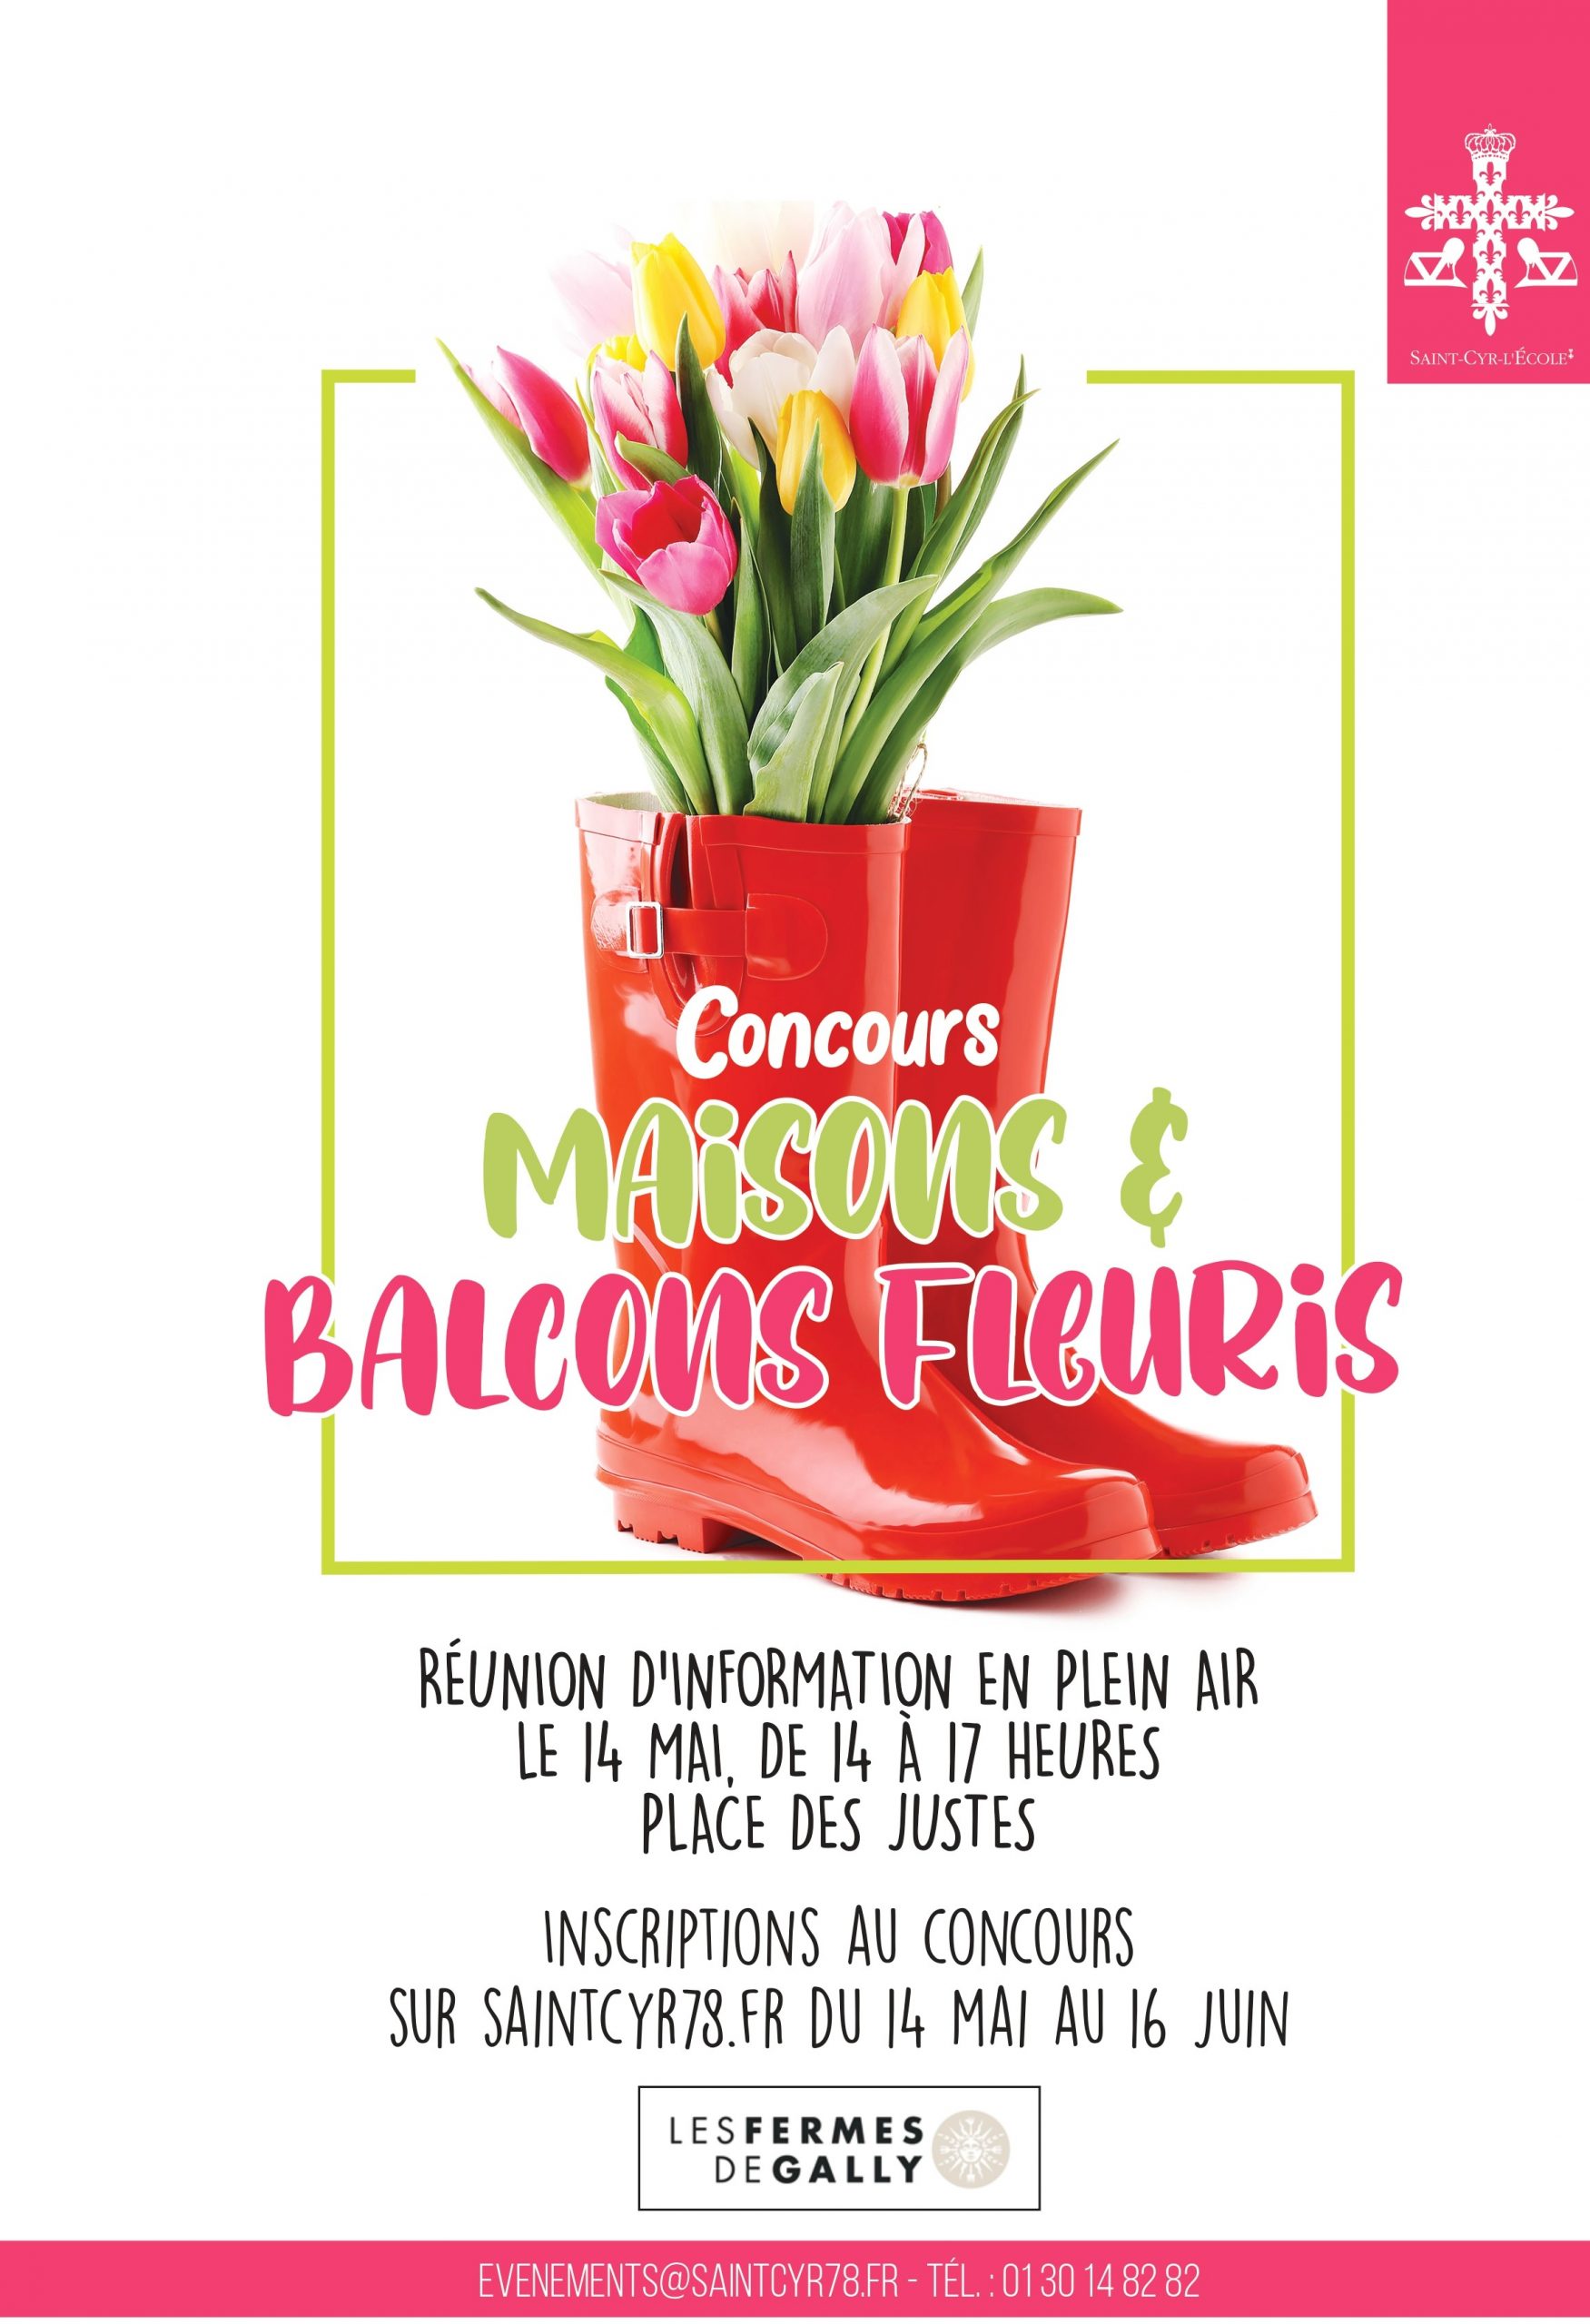 Concours Maisons et Balcons Fleuris – réunion d’information